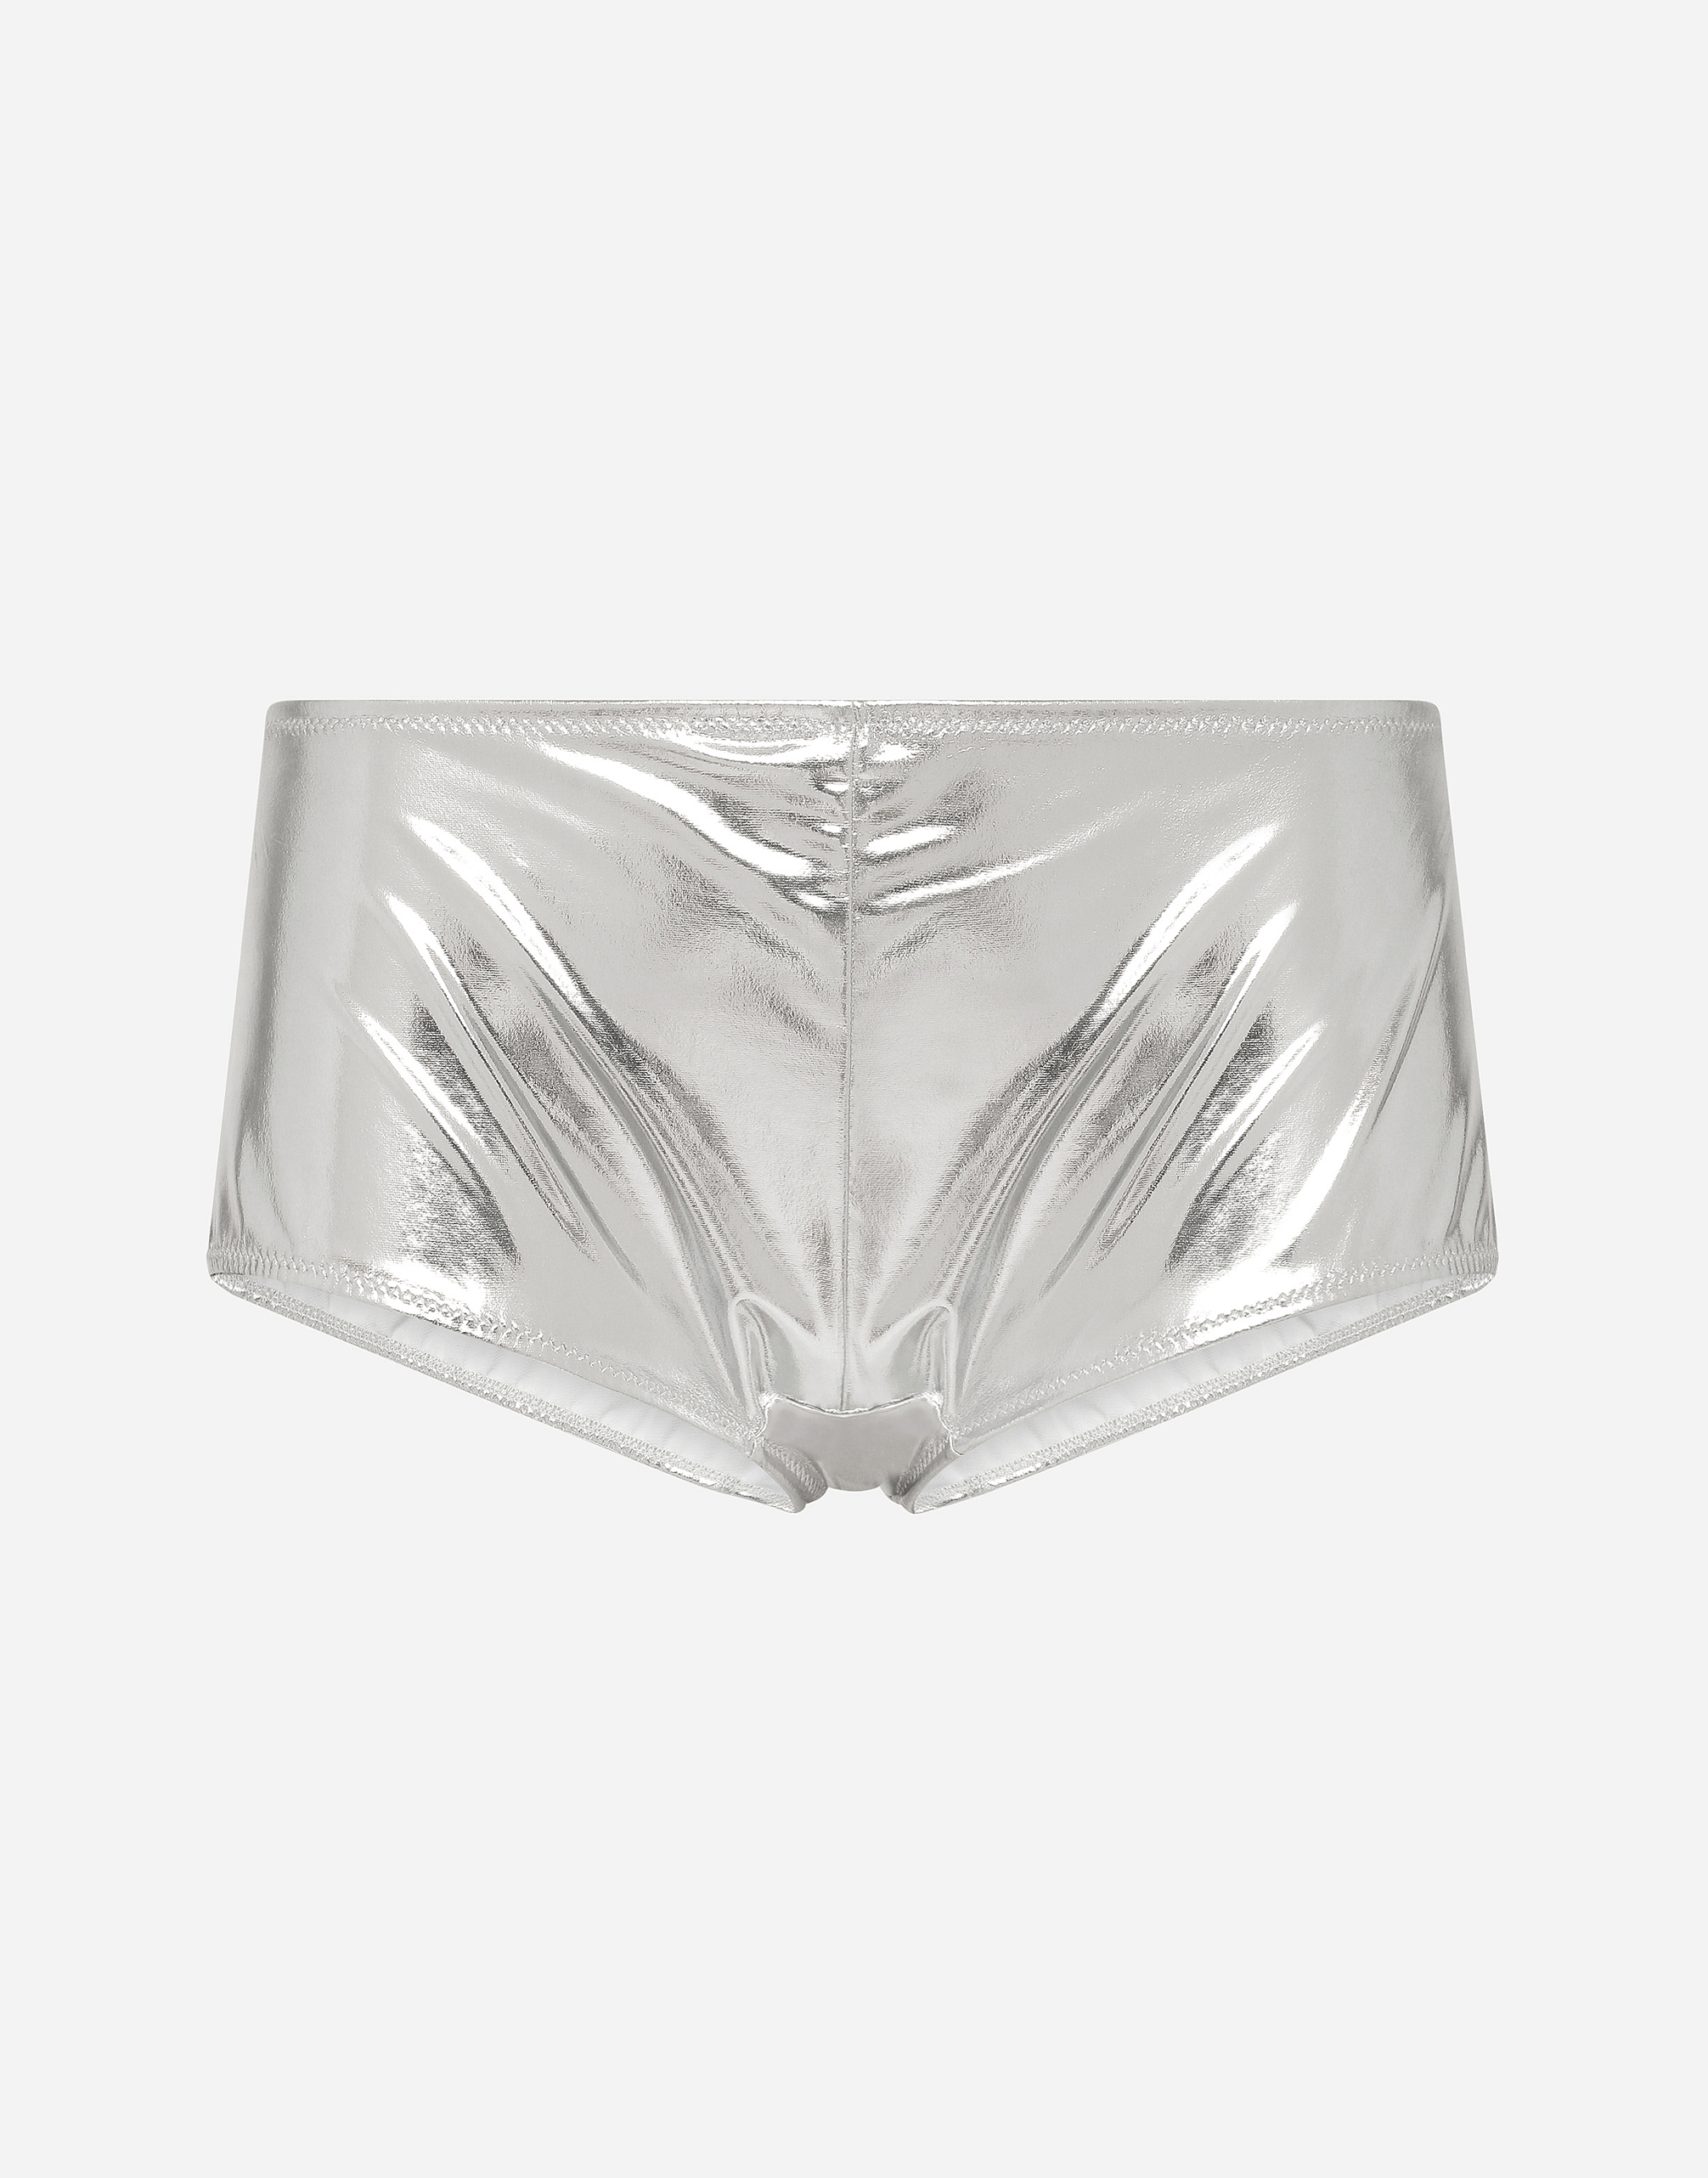 metallic underwear for women